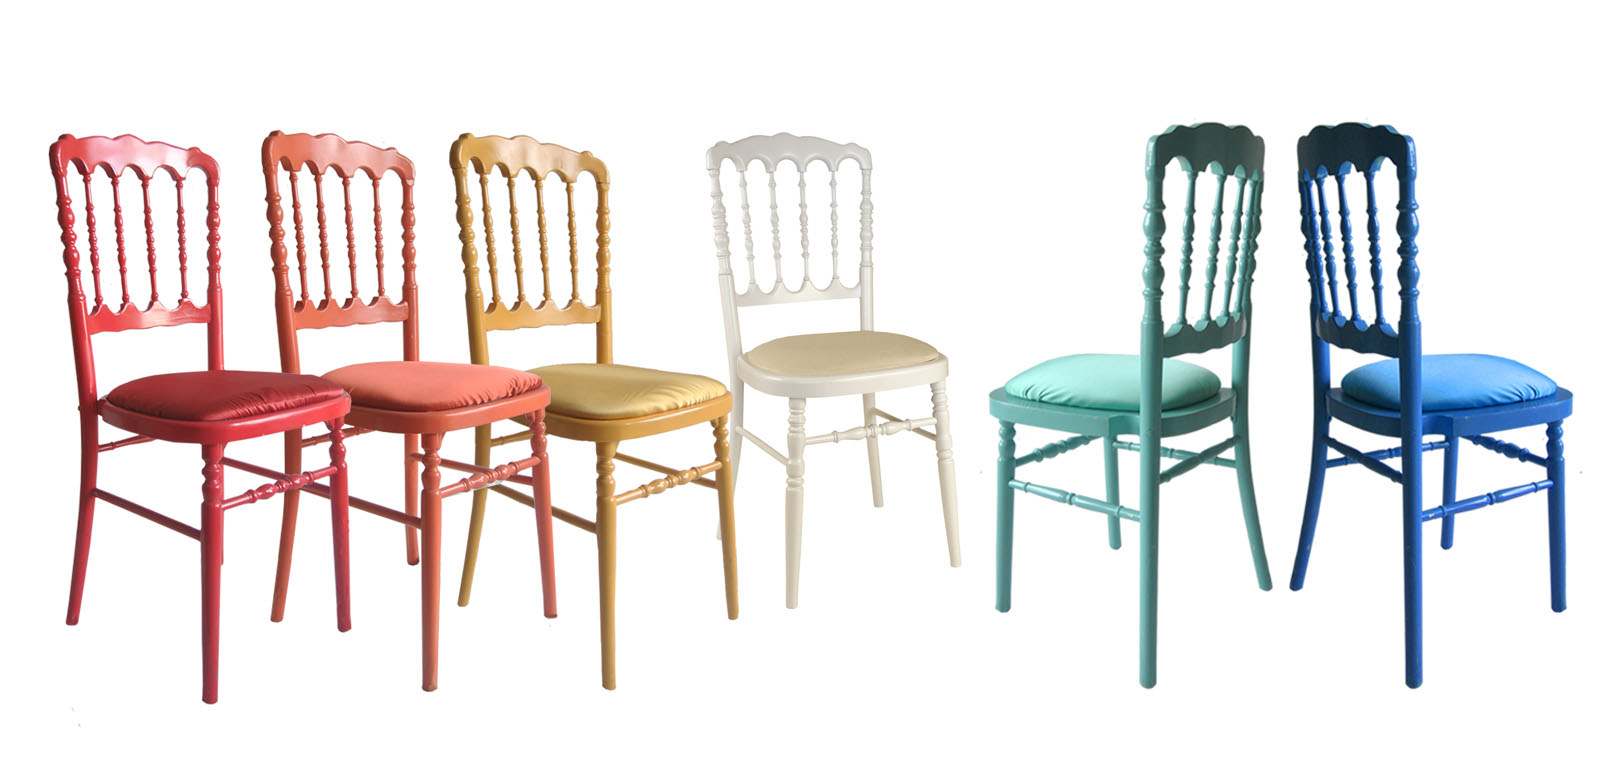 Noleggio sedia parigina colorata - oltreilgiardino